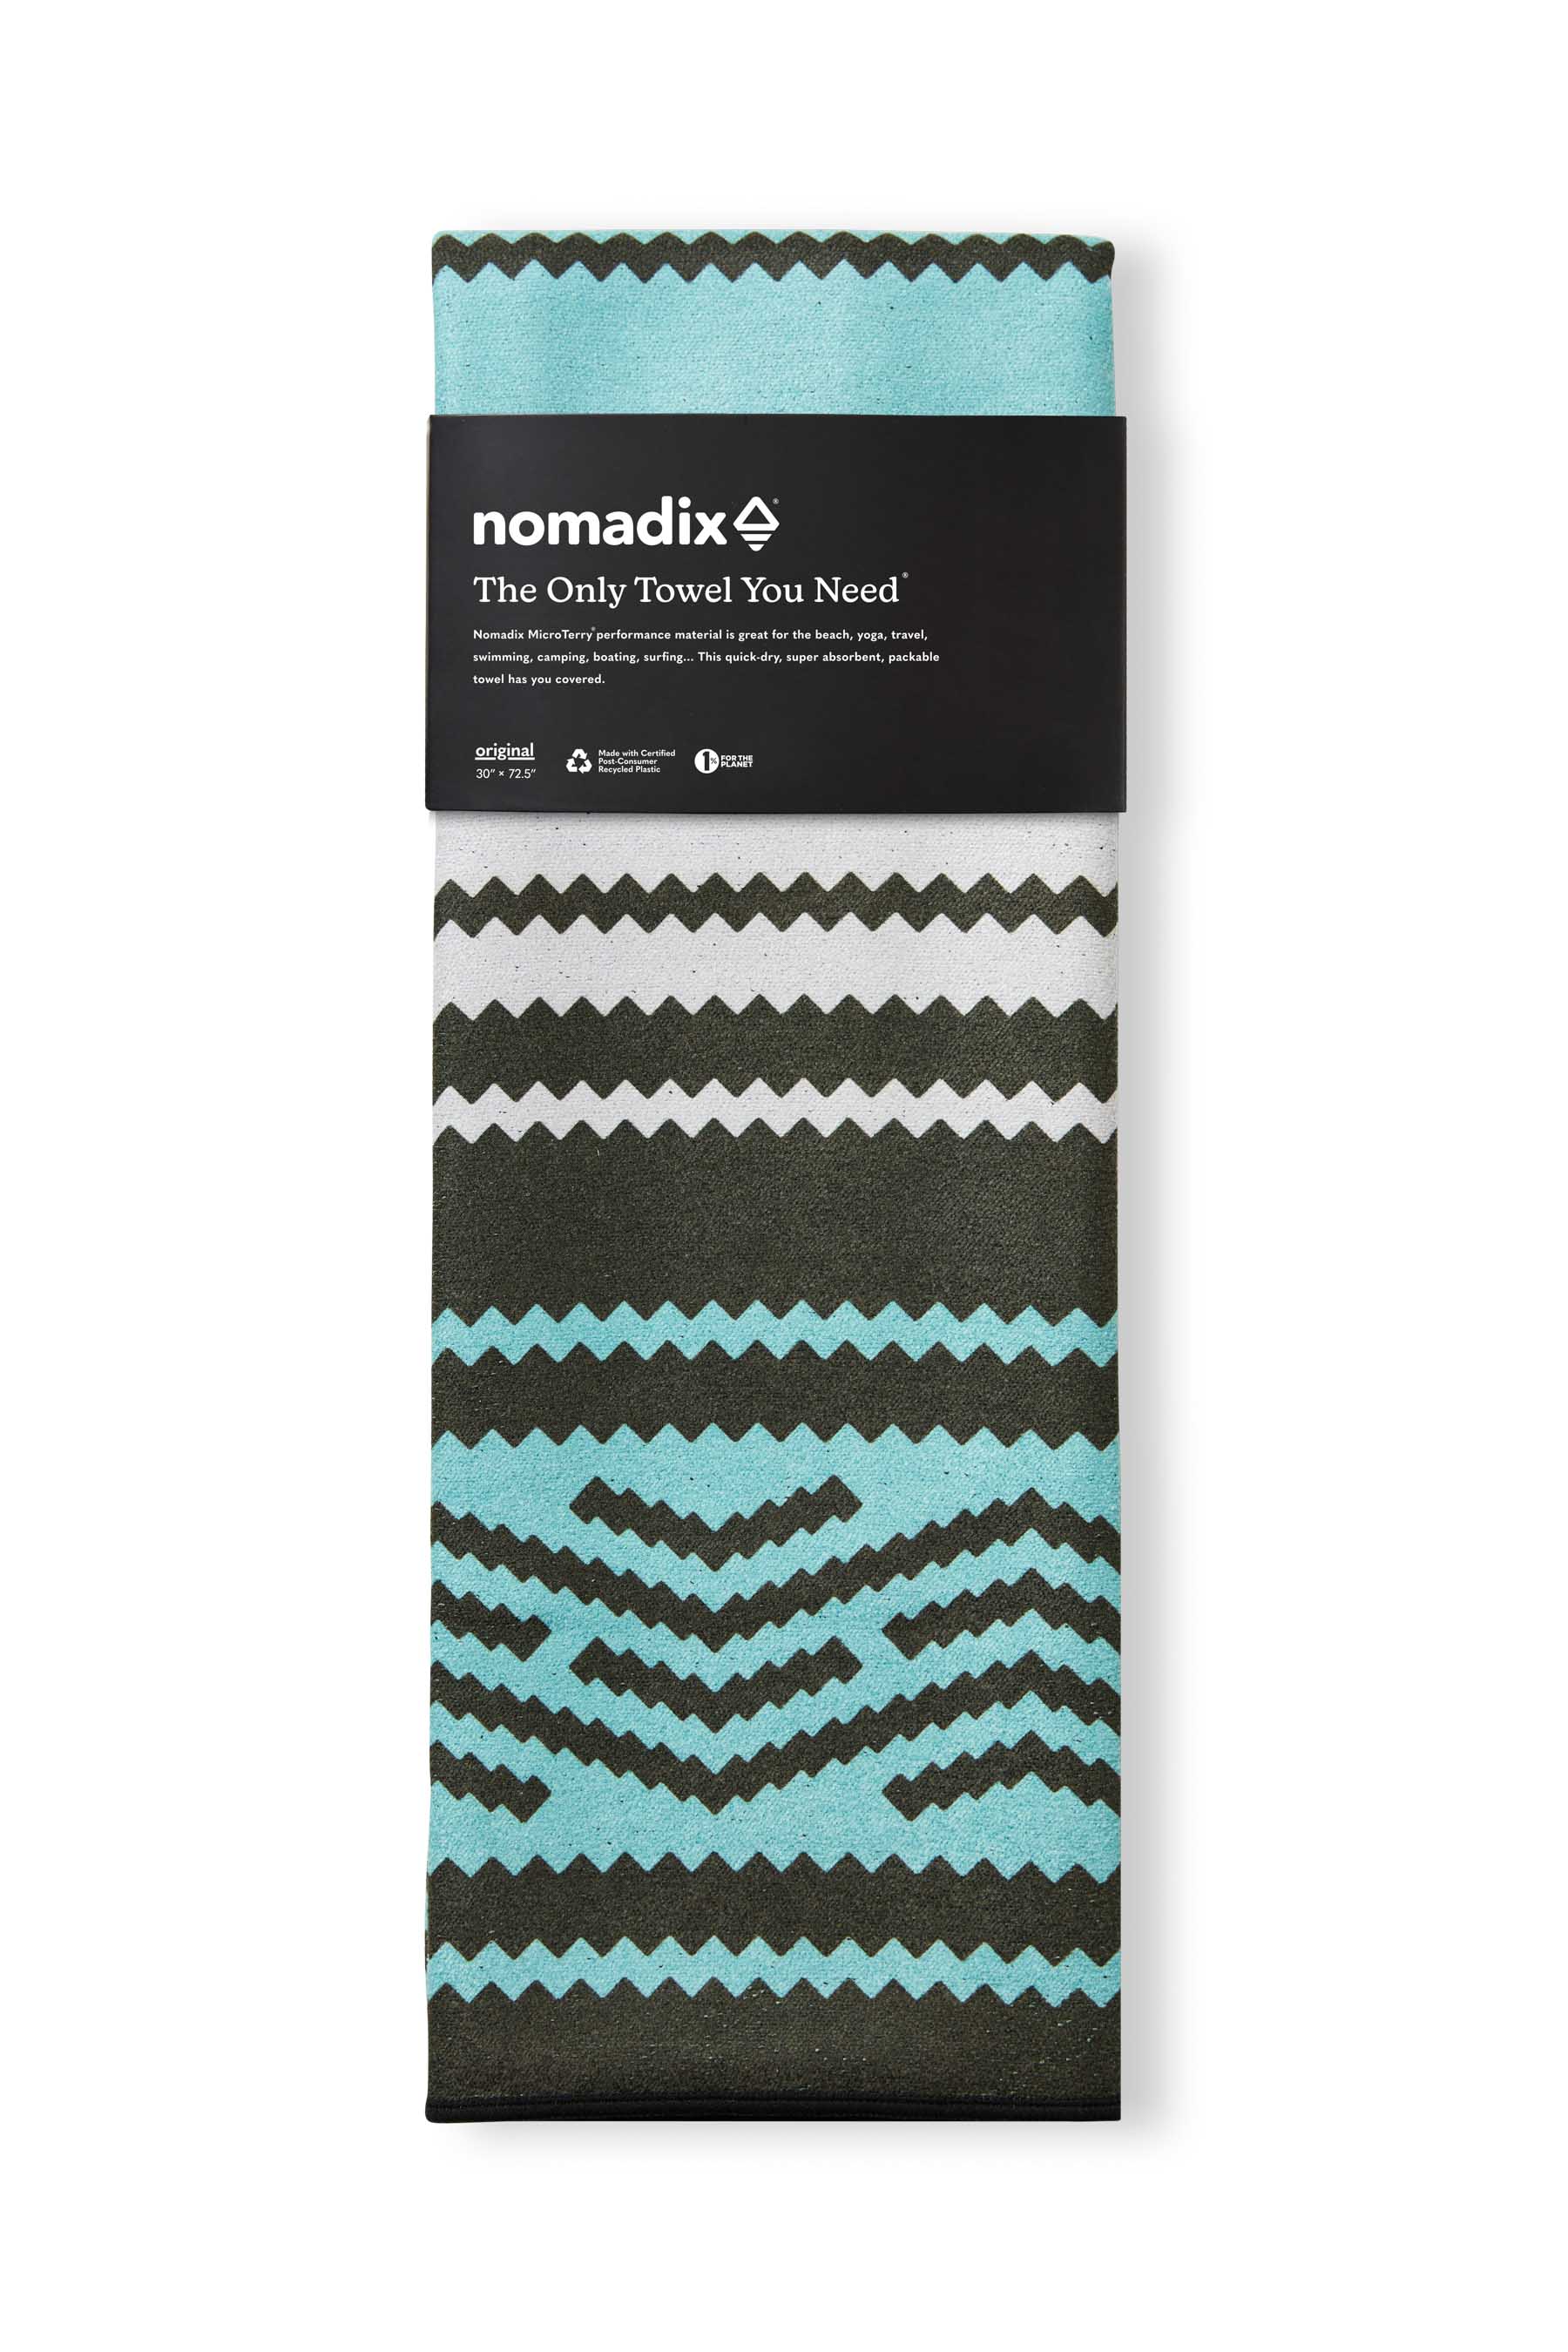 The Original Nomadix Towel - Baja Aqua